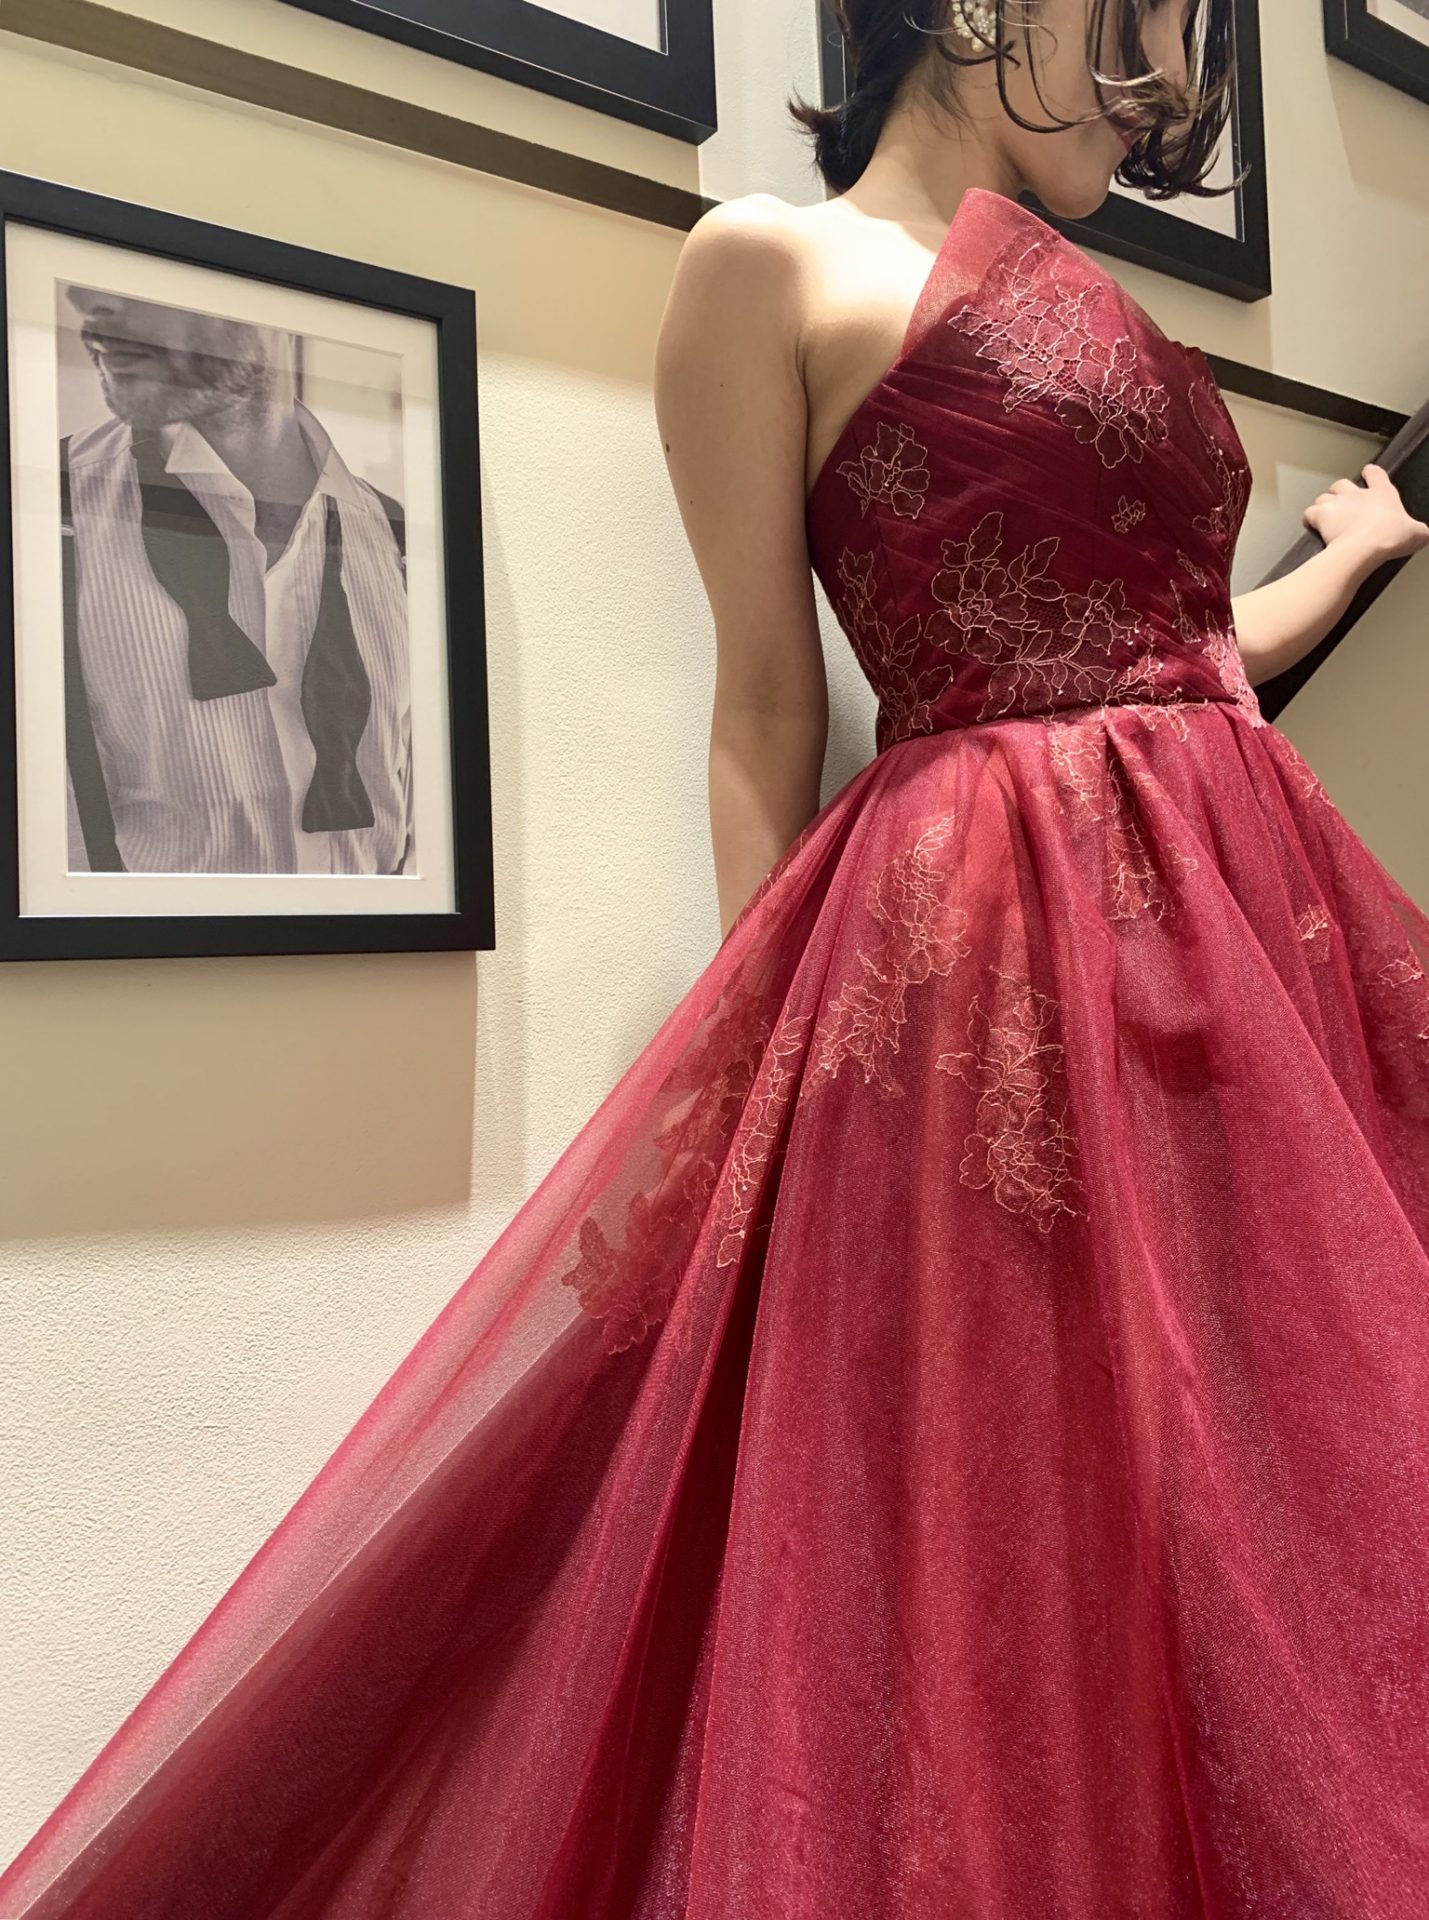 ザトリートドレッシング神戸店に入荷した新作の赤のカラードレス